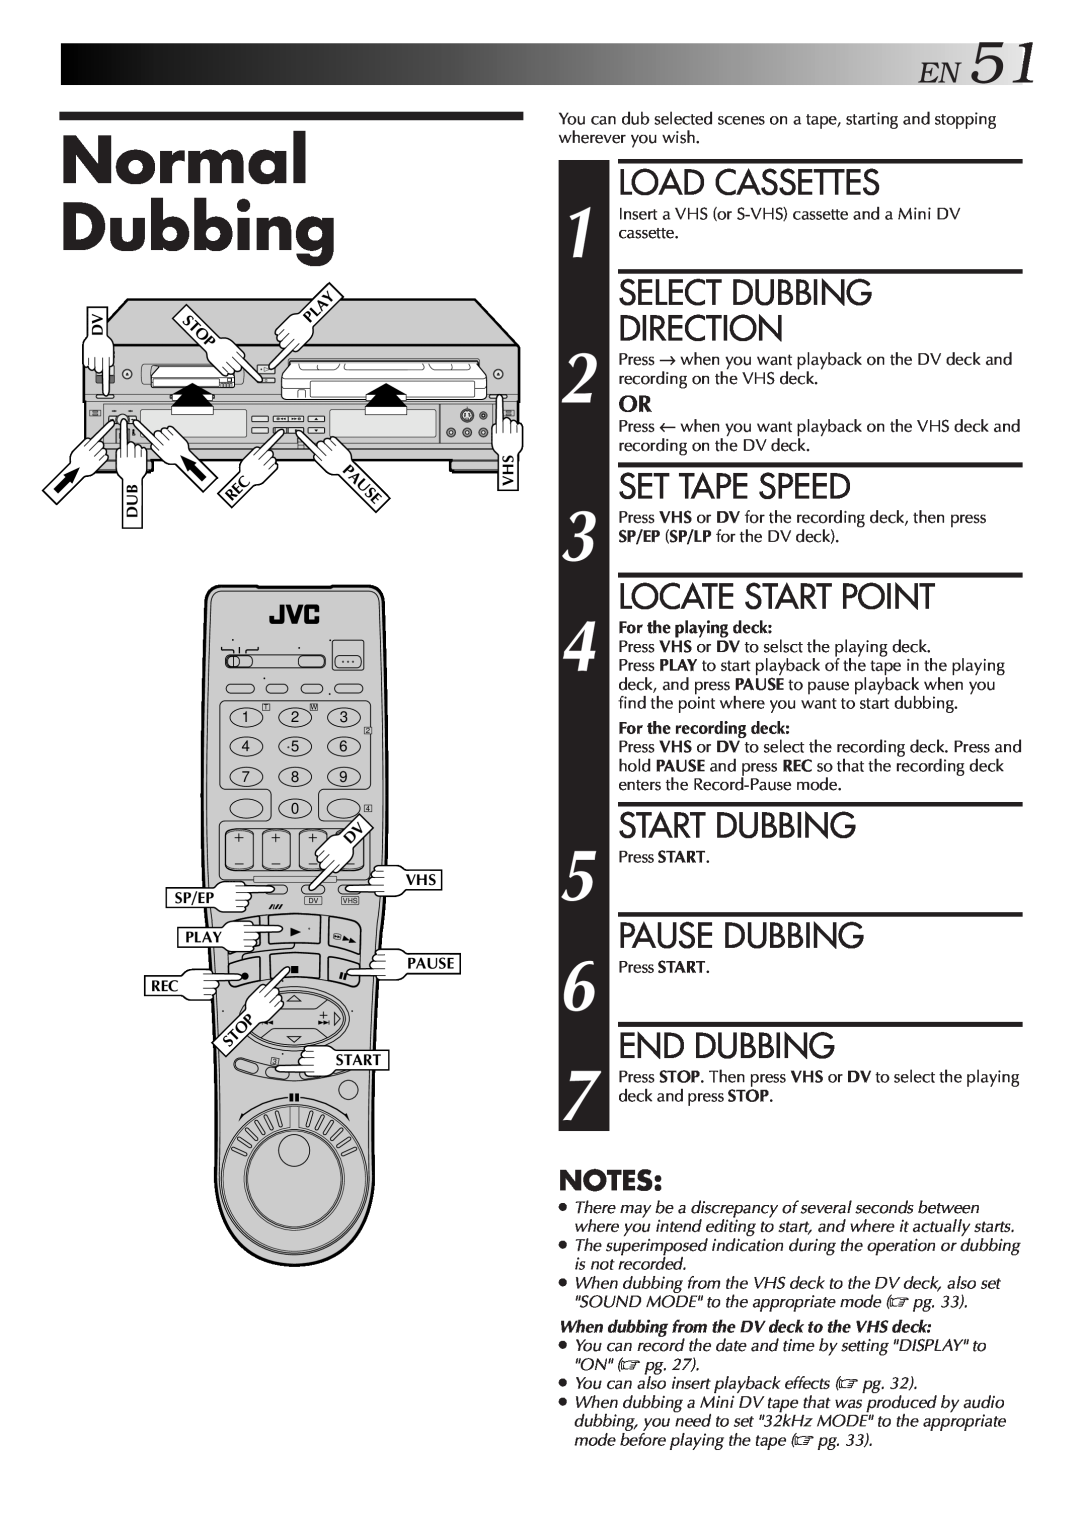 JVC Model HR-DVS1U manual Normal Dubbing, Pause Dubbing, End Dubbing, EN51, Stop, Load Cassettes, Select Dubbing, Direction 